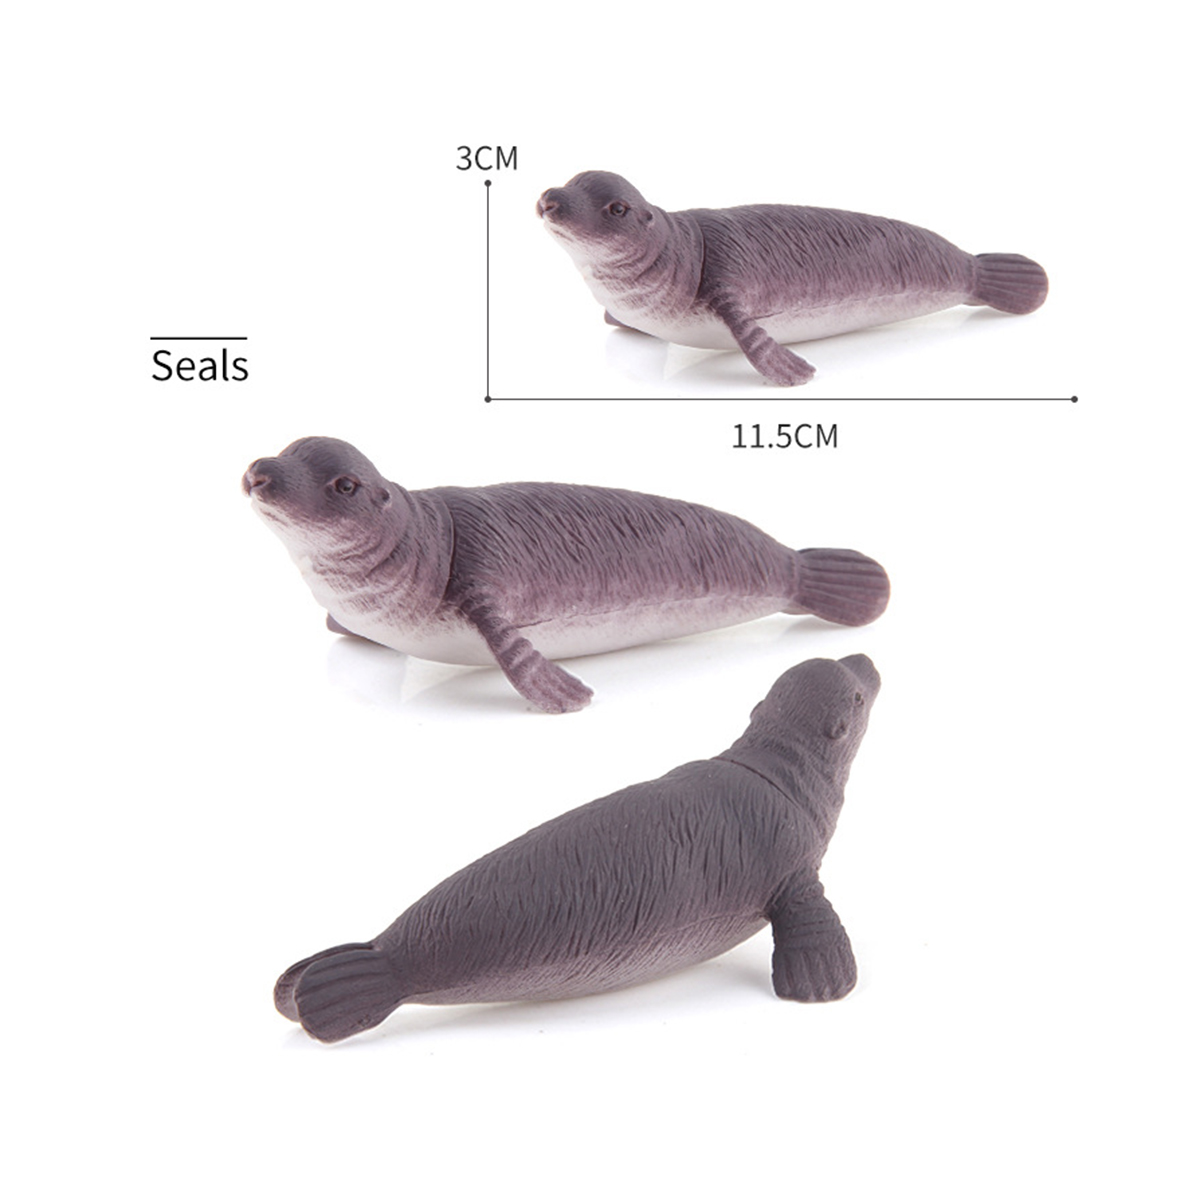 Bộ 12 đồ chơi Cá Biển Ốc Mực Hải Cẩu Cá Mập Cá Heo Ocean World Fish nhựa dẻo 12 chi tiết cho bé mang đi biển, đi tắm hồ bơi